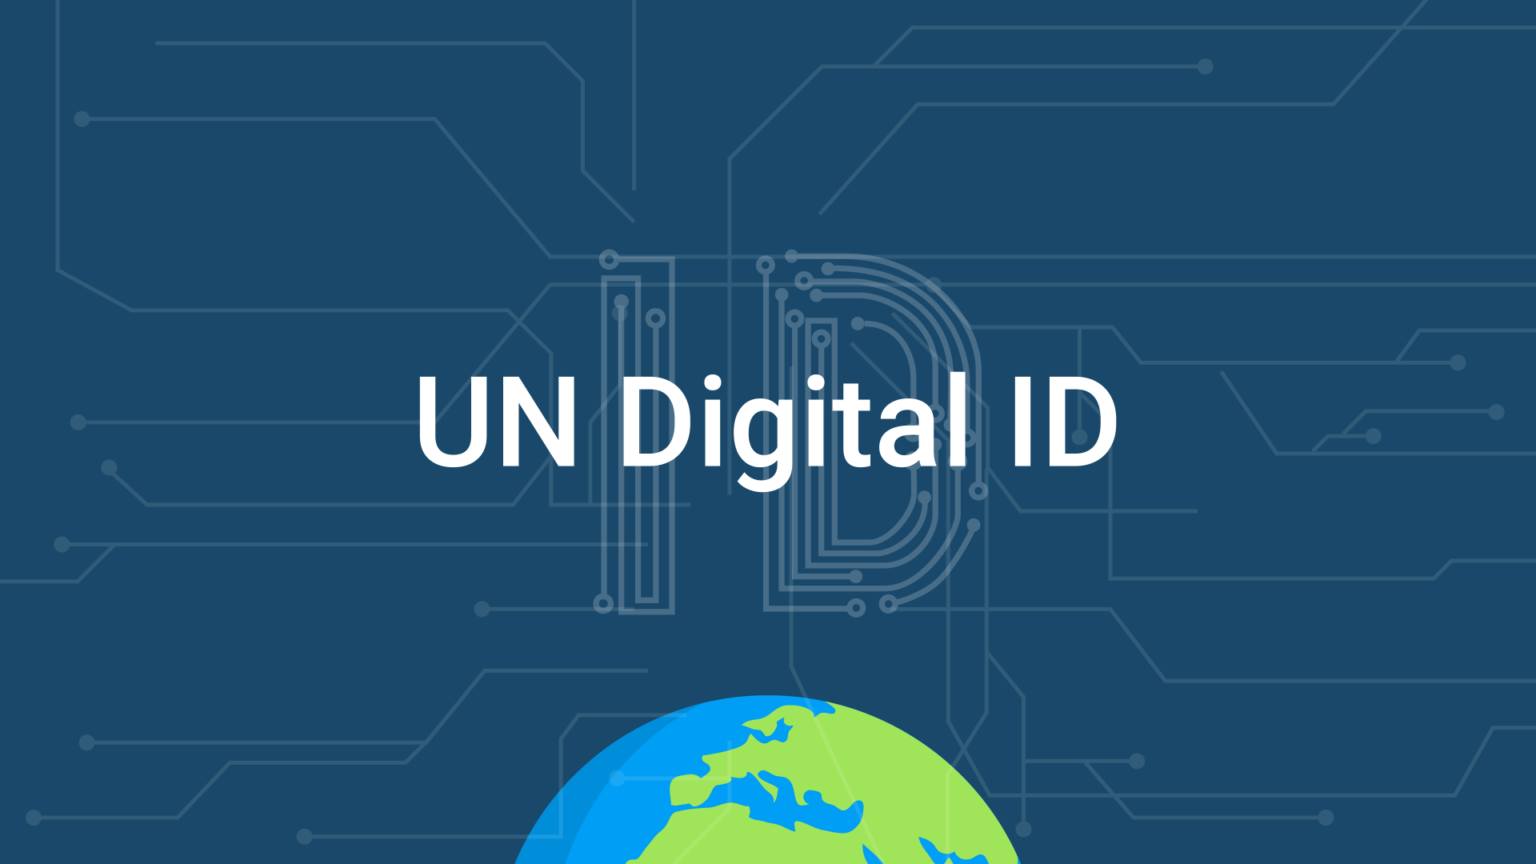 UN Digital ID – A Building Block for UN Digital Cooperation